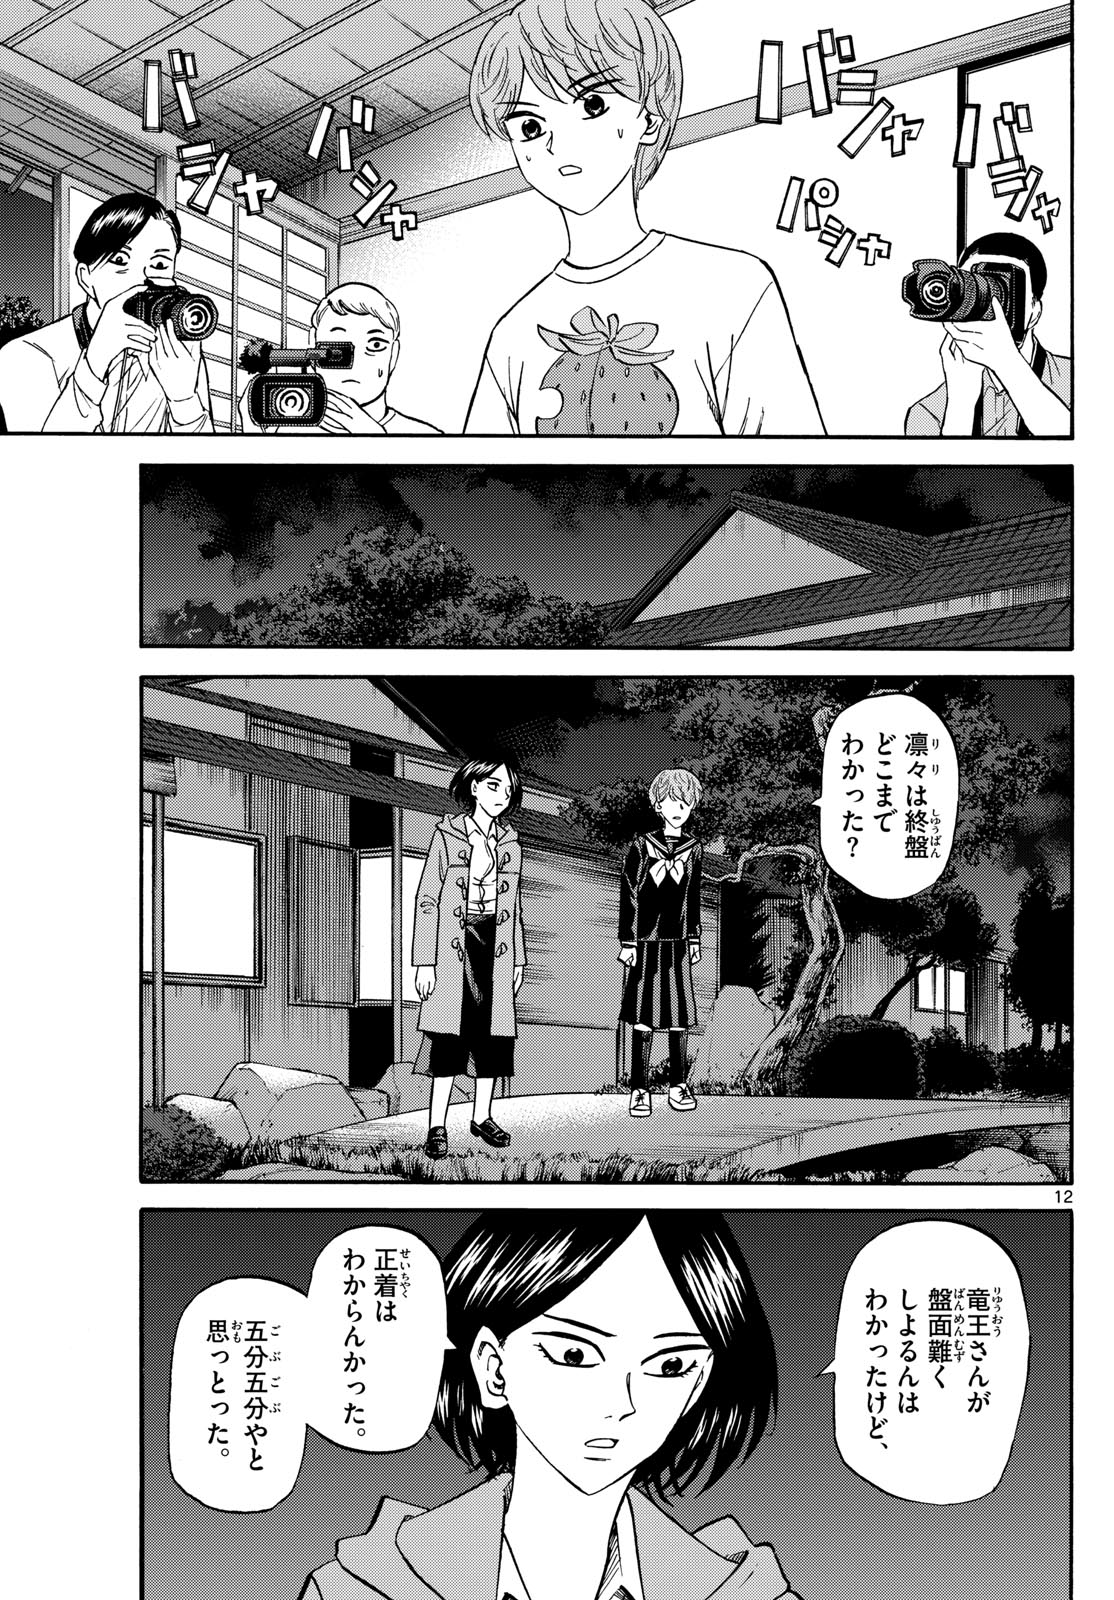 Tatsu to Ichigo - Chapter 170 - Page 12